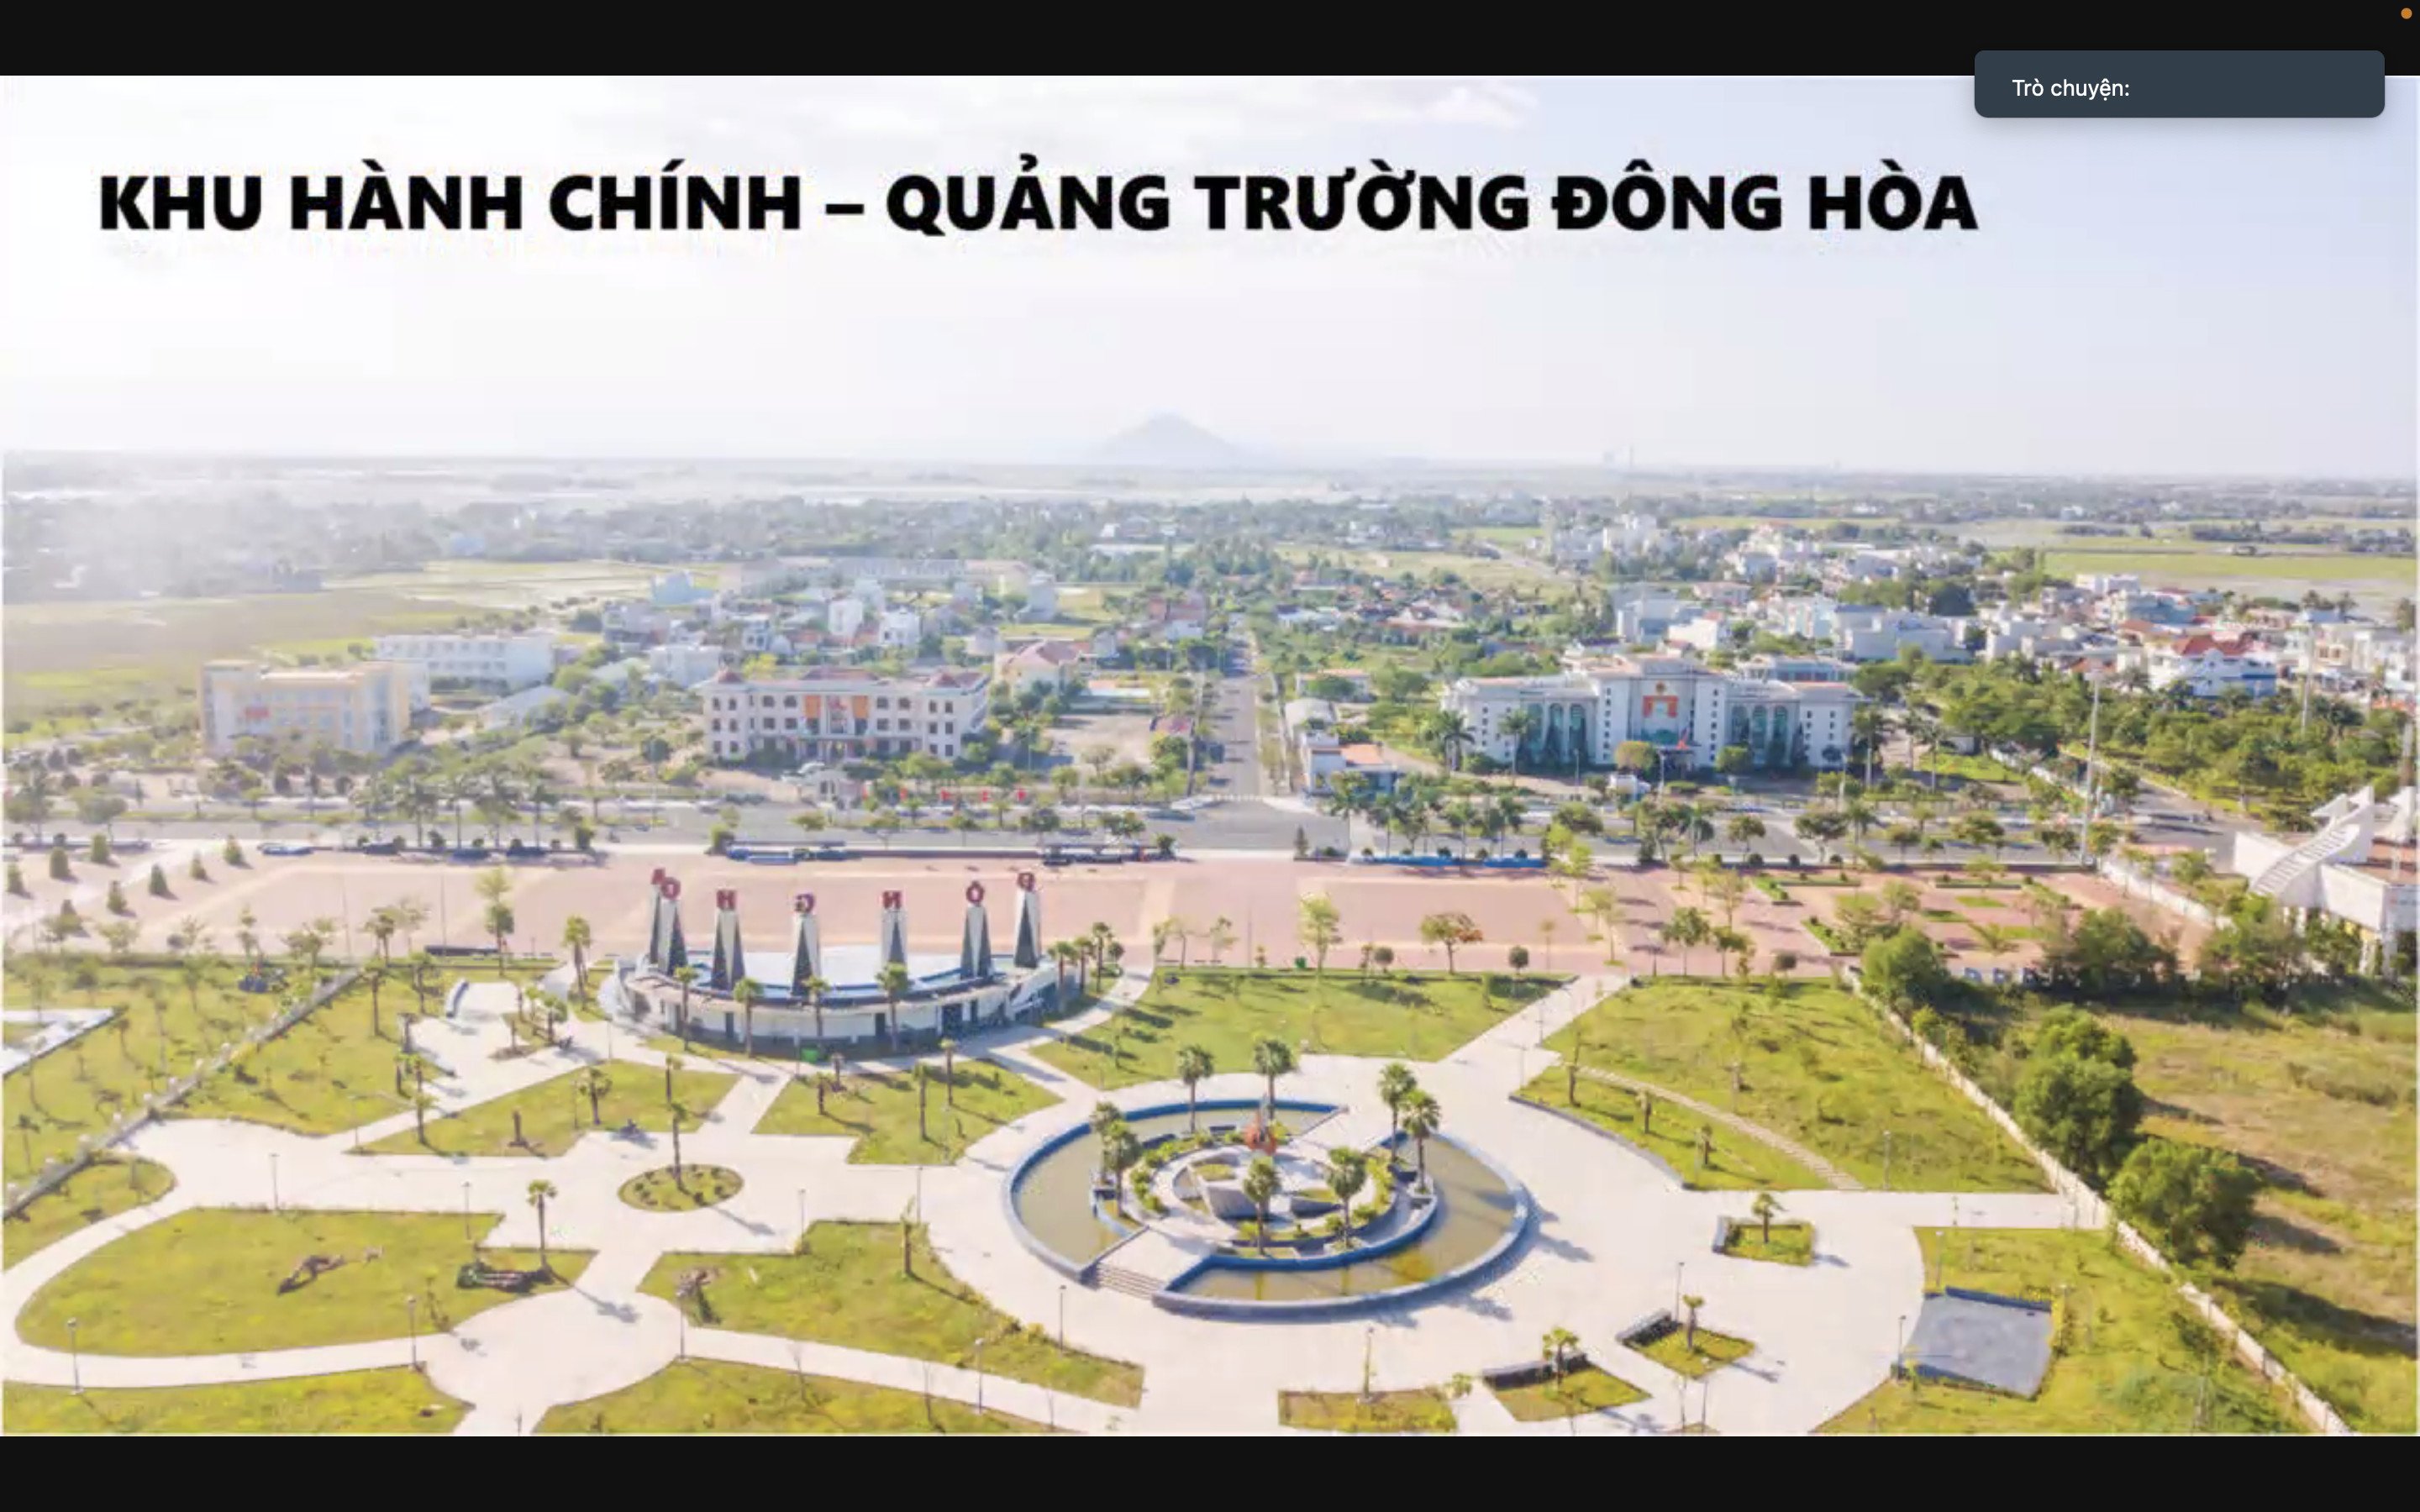 Ra mắt đất nền biển Kinh Tế Nam Phú Yên - cơ hội đầu tư cuối năm 2022